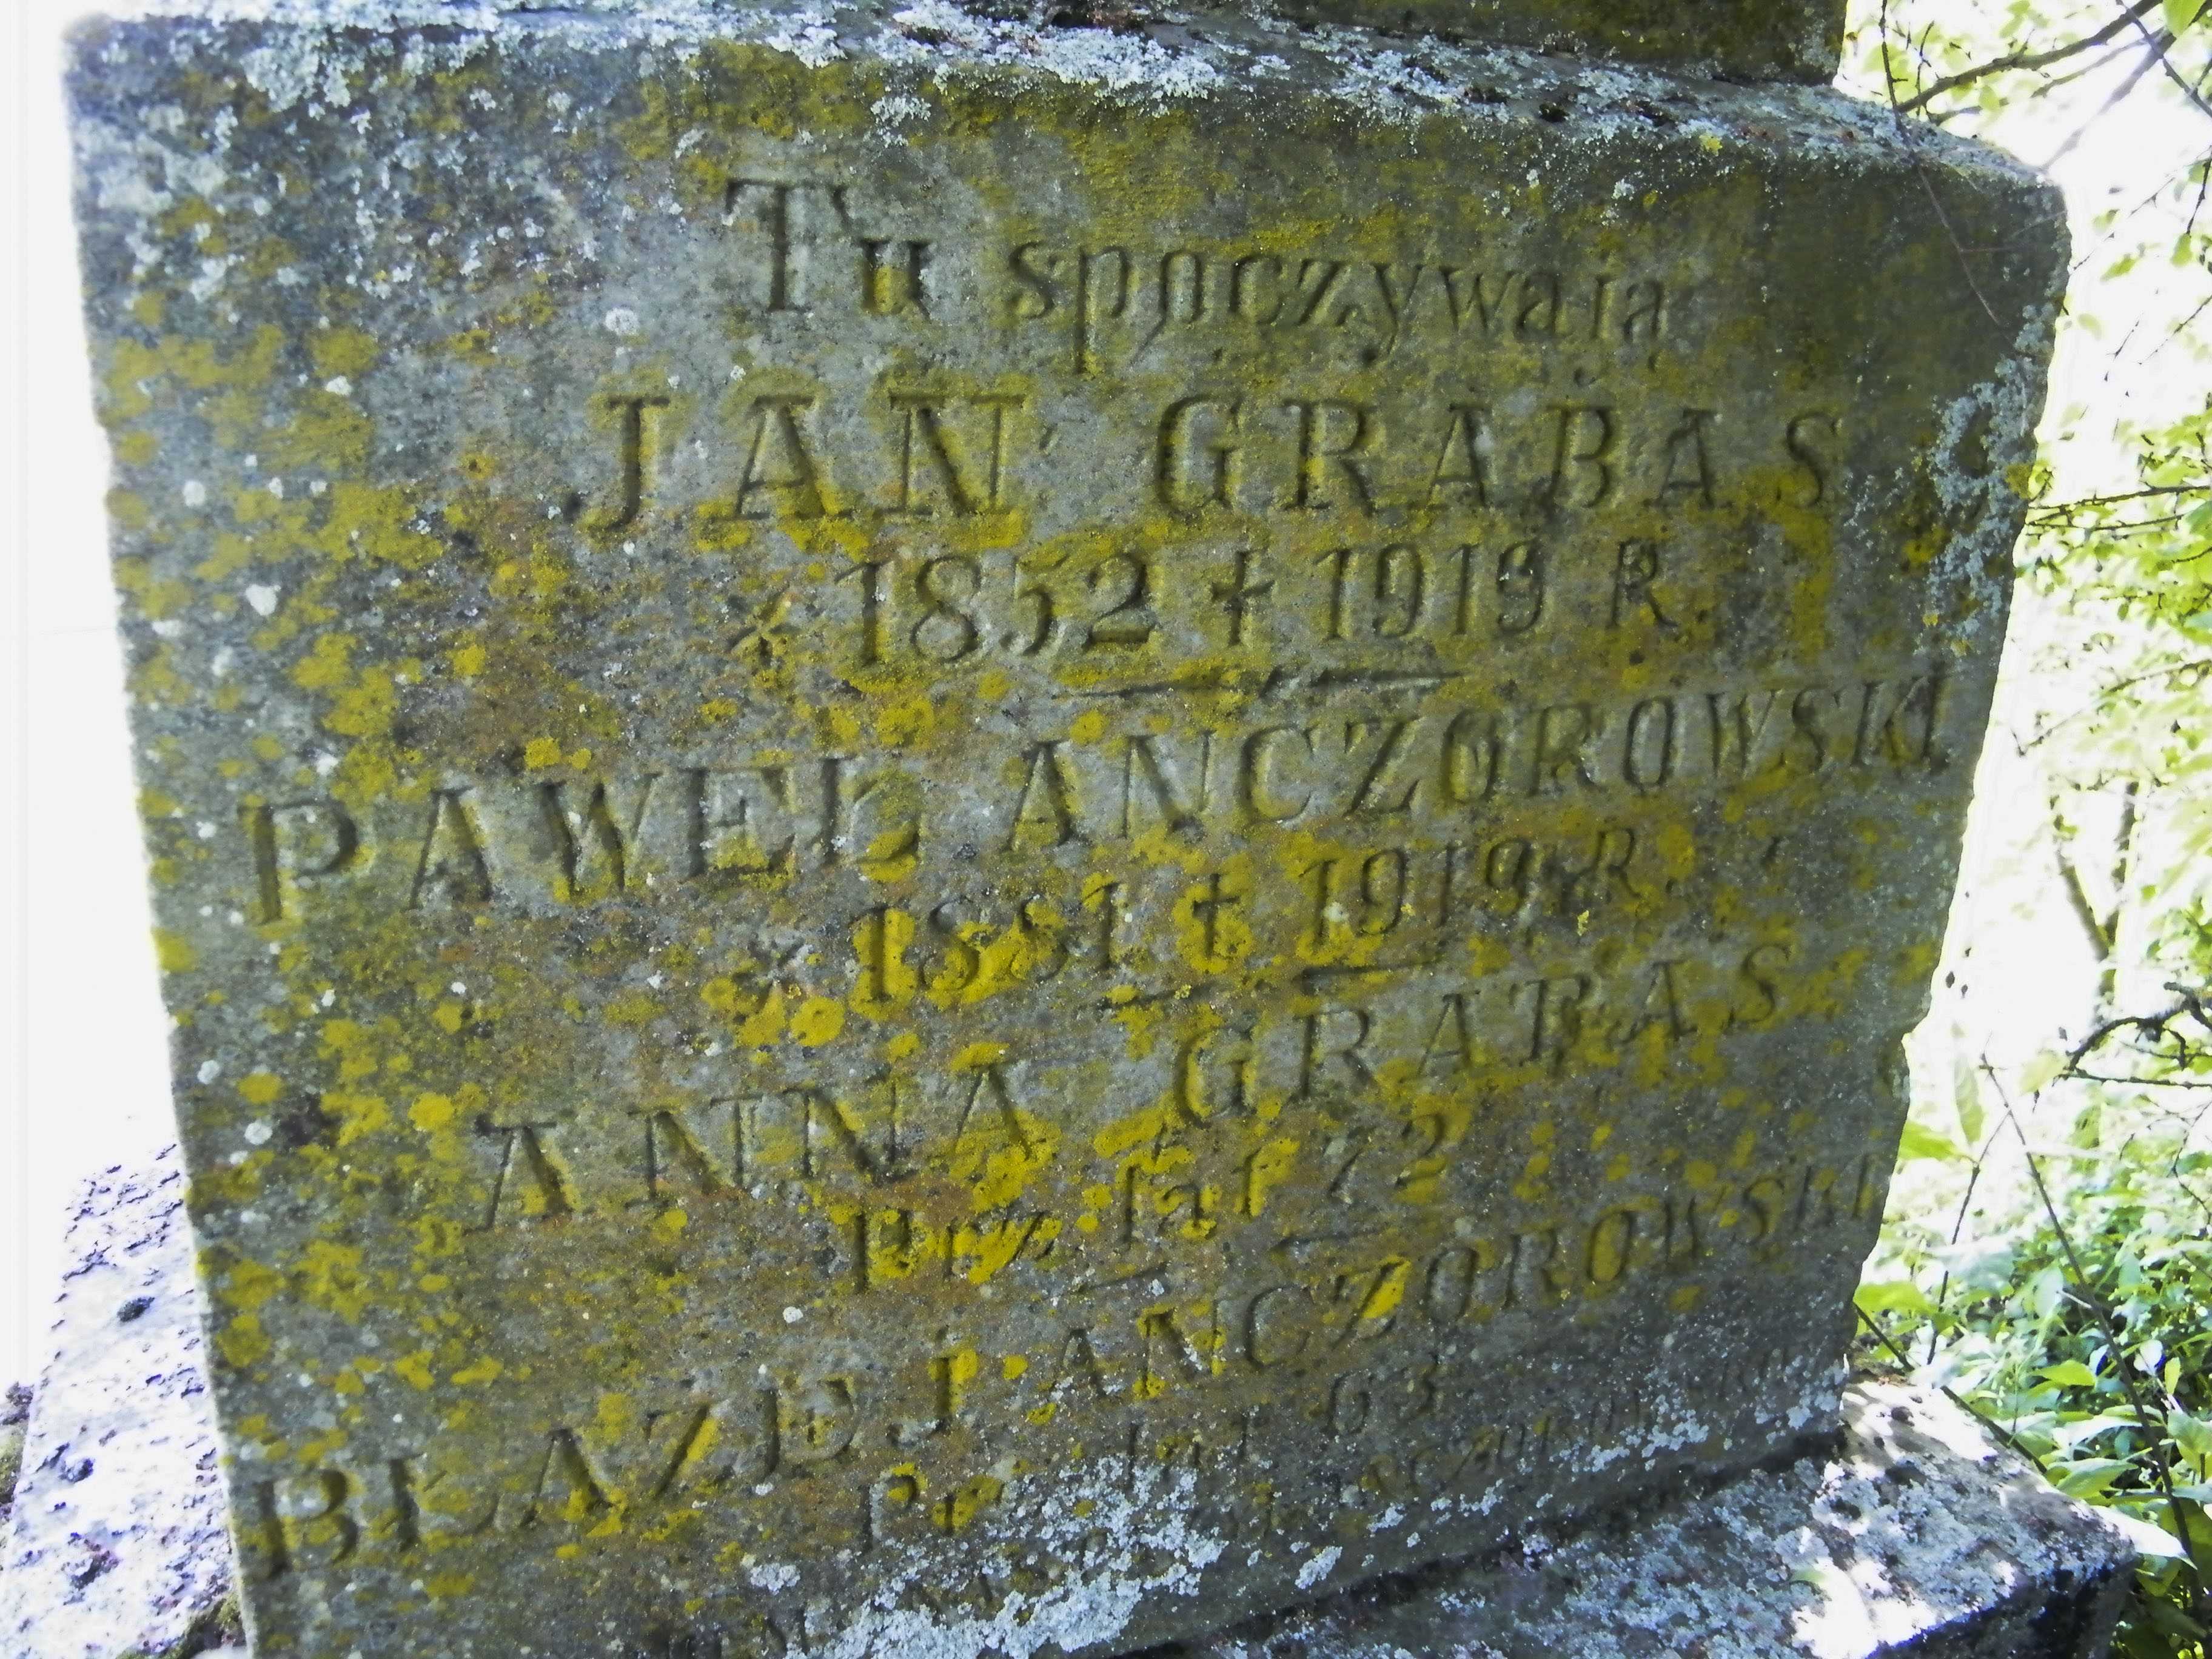 Inscription from the gravestone of Błażej Anczorowski, Paweł Anczorowski, Anna Grabas and Jan Grabas, Łozowa Cemetery